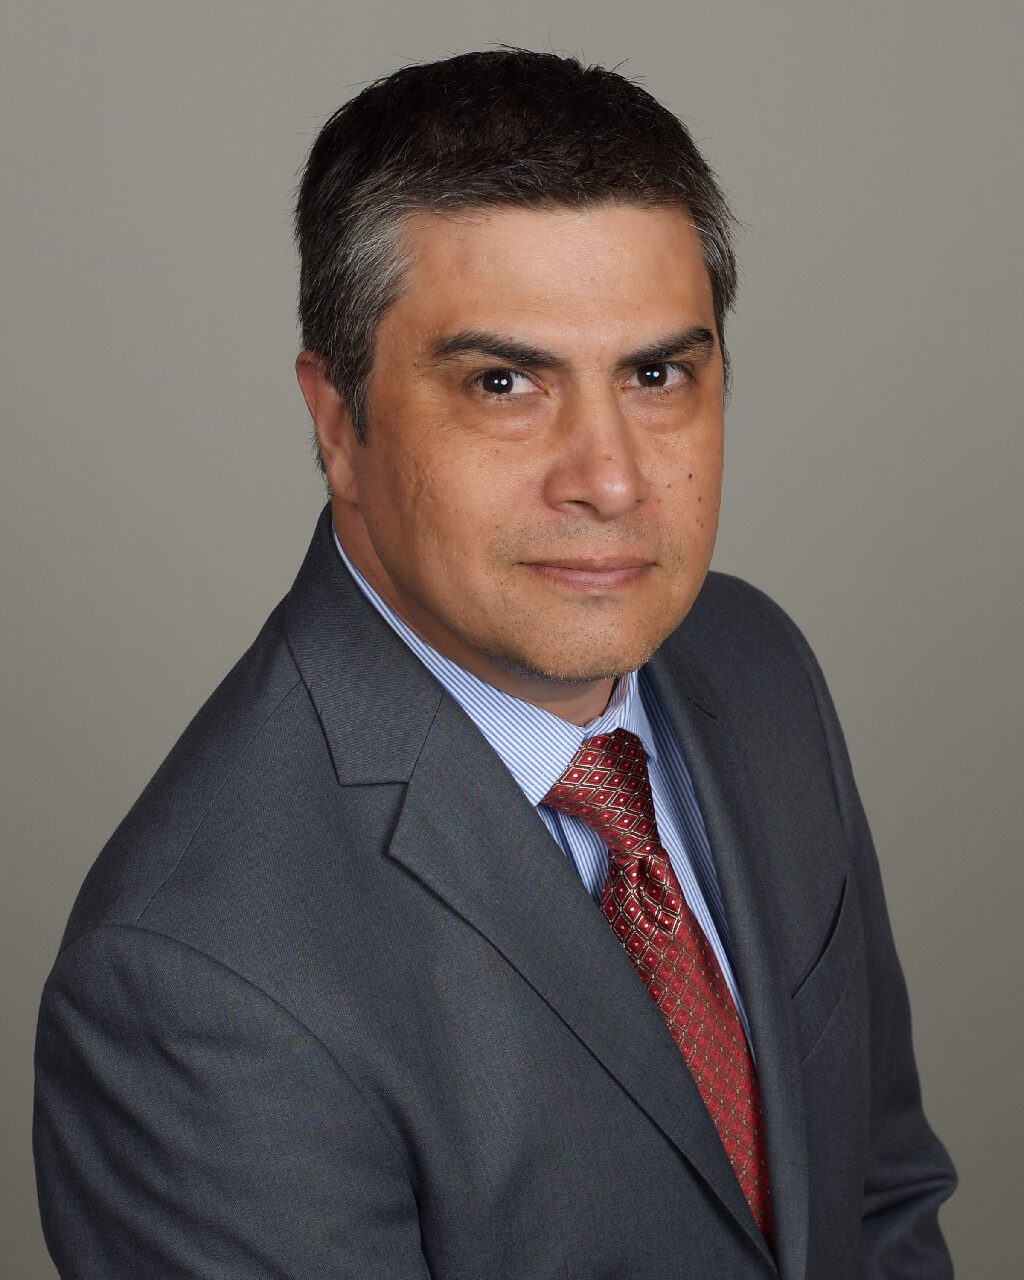 David Vasquez